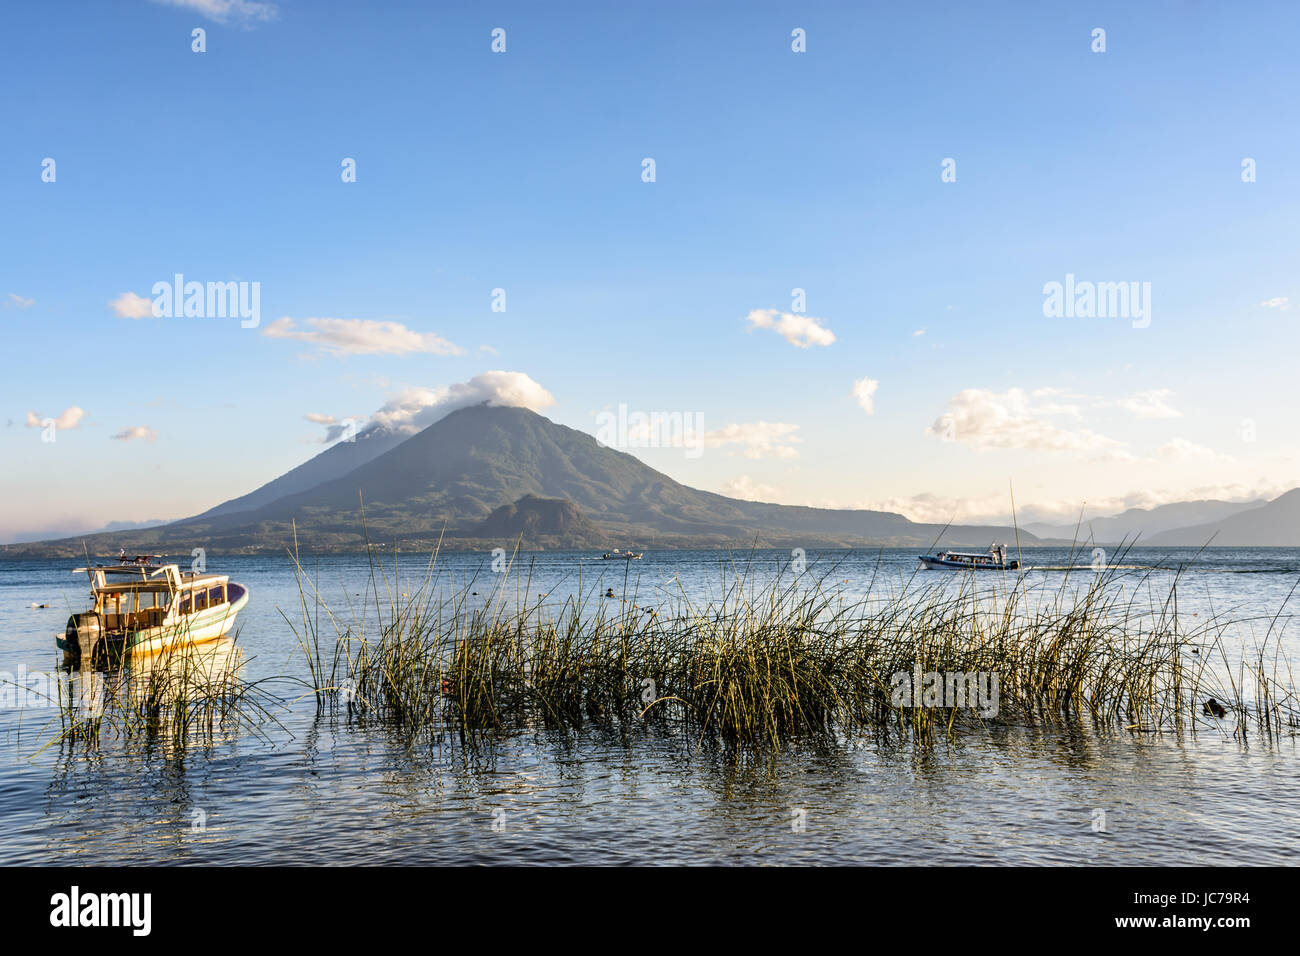 Abendlicht auf Boote & zwei Vulkane, Atitlán und toliman, am Atitlan See, Guatemala. Stockfoto